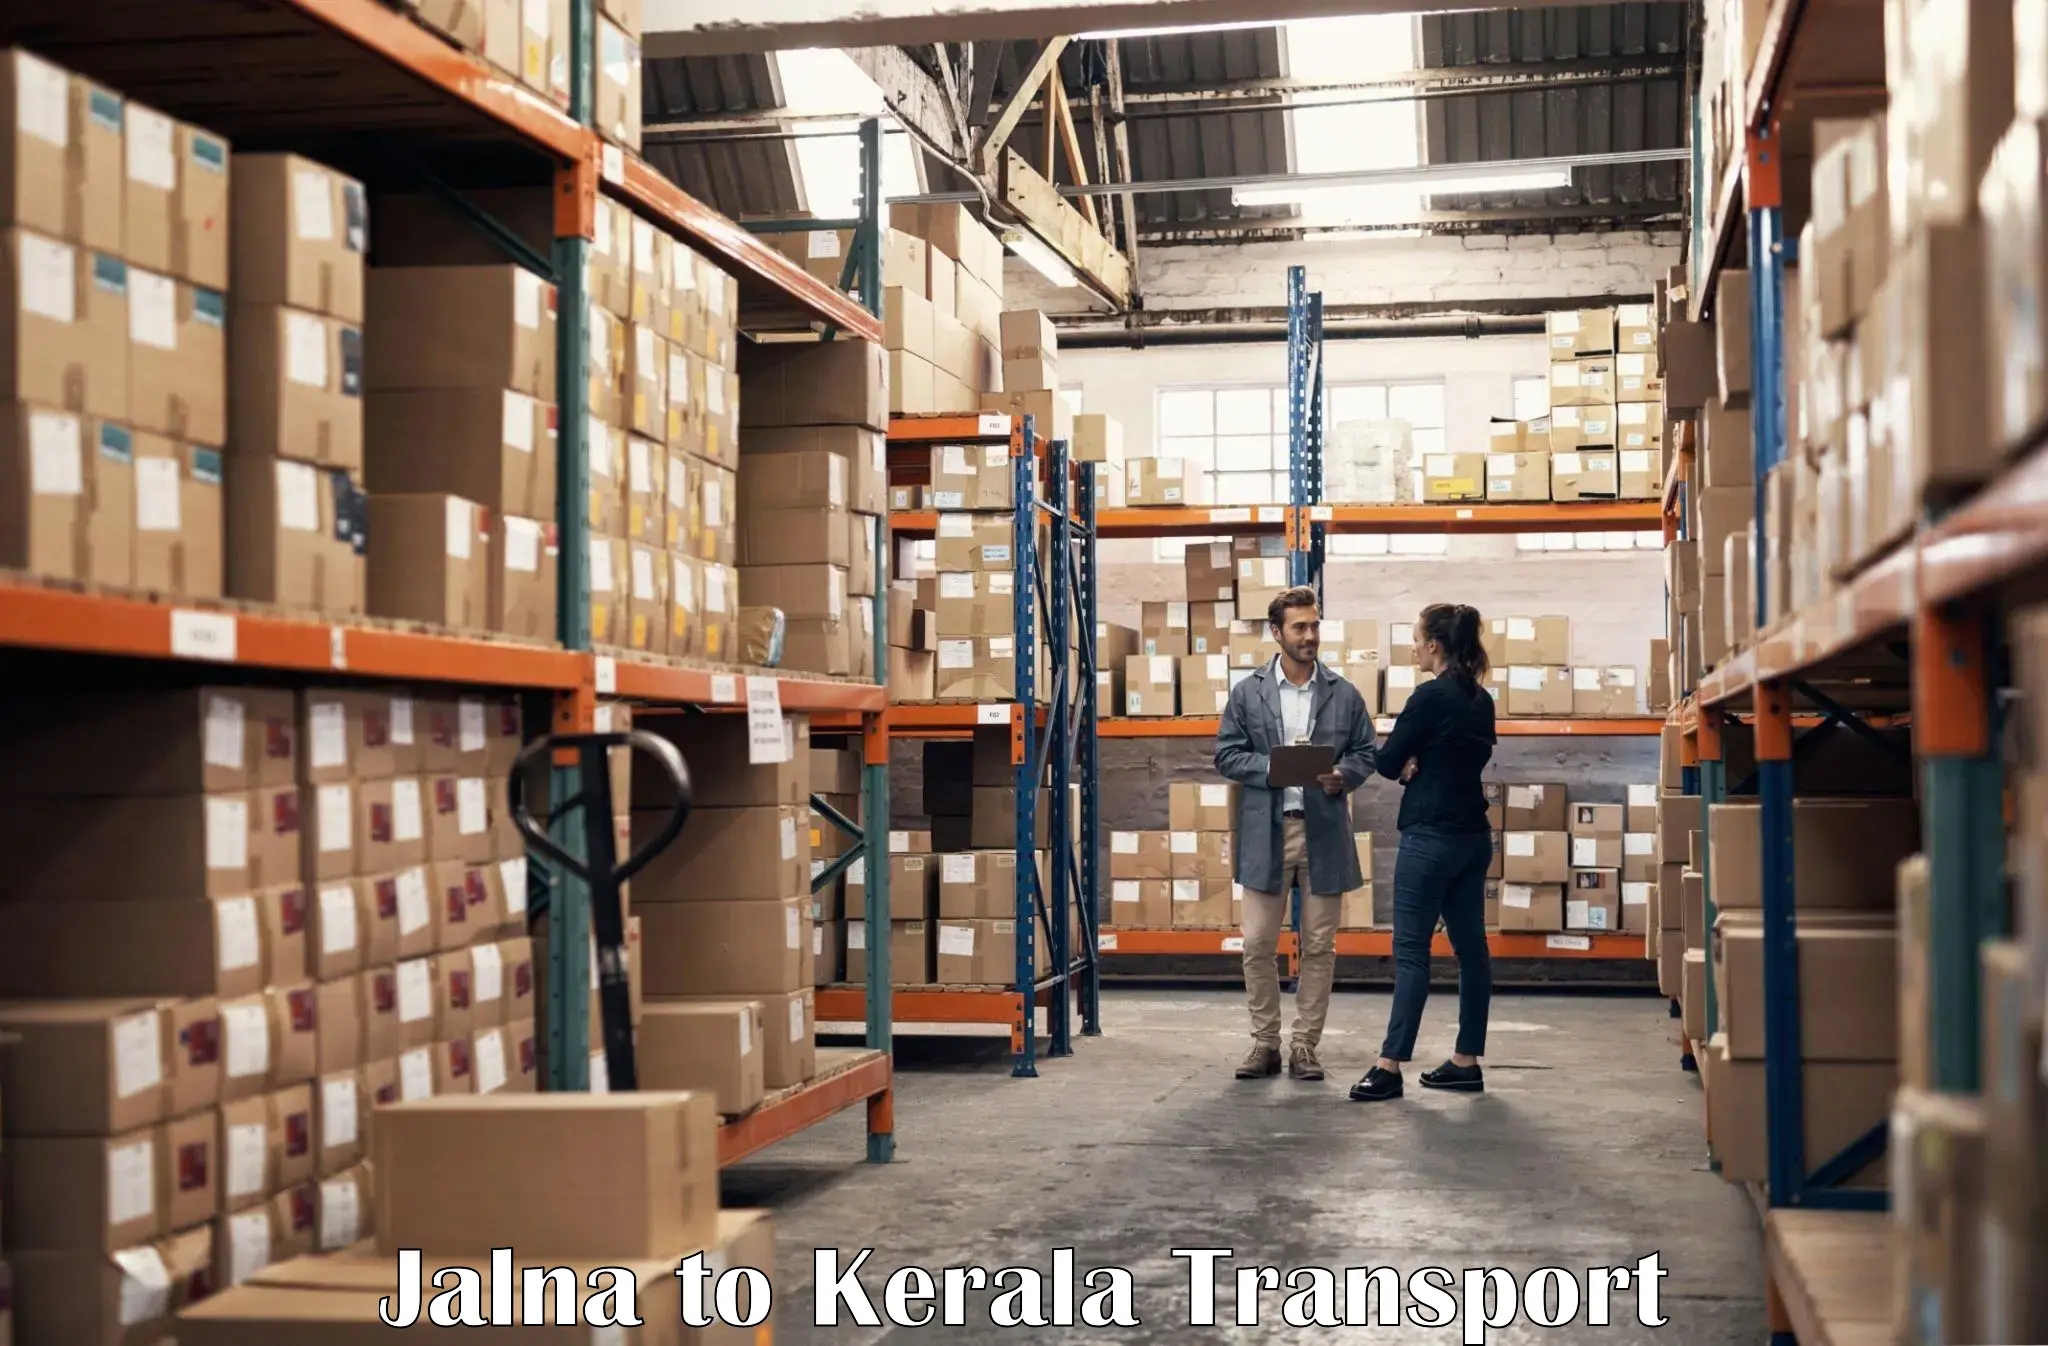 Commercial transport service Jalna to Kondotty